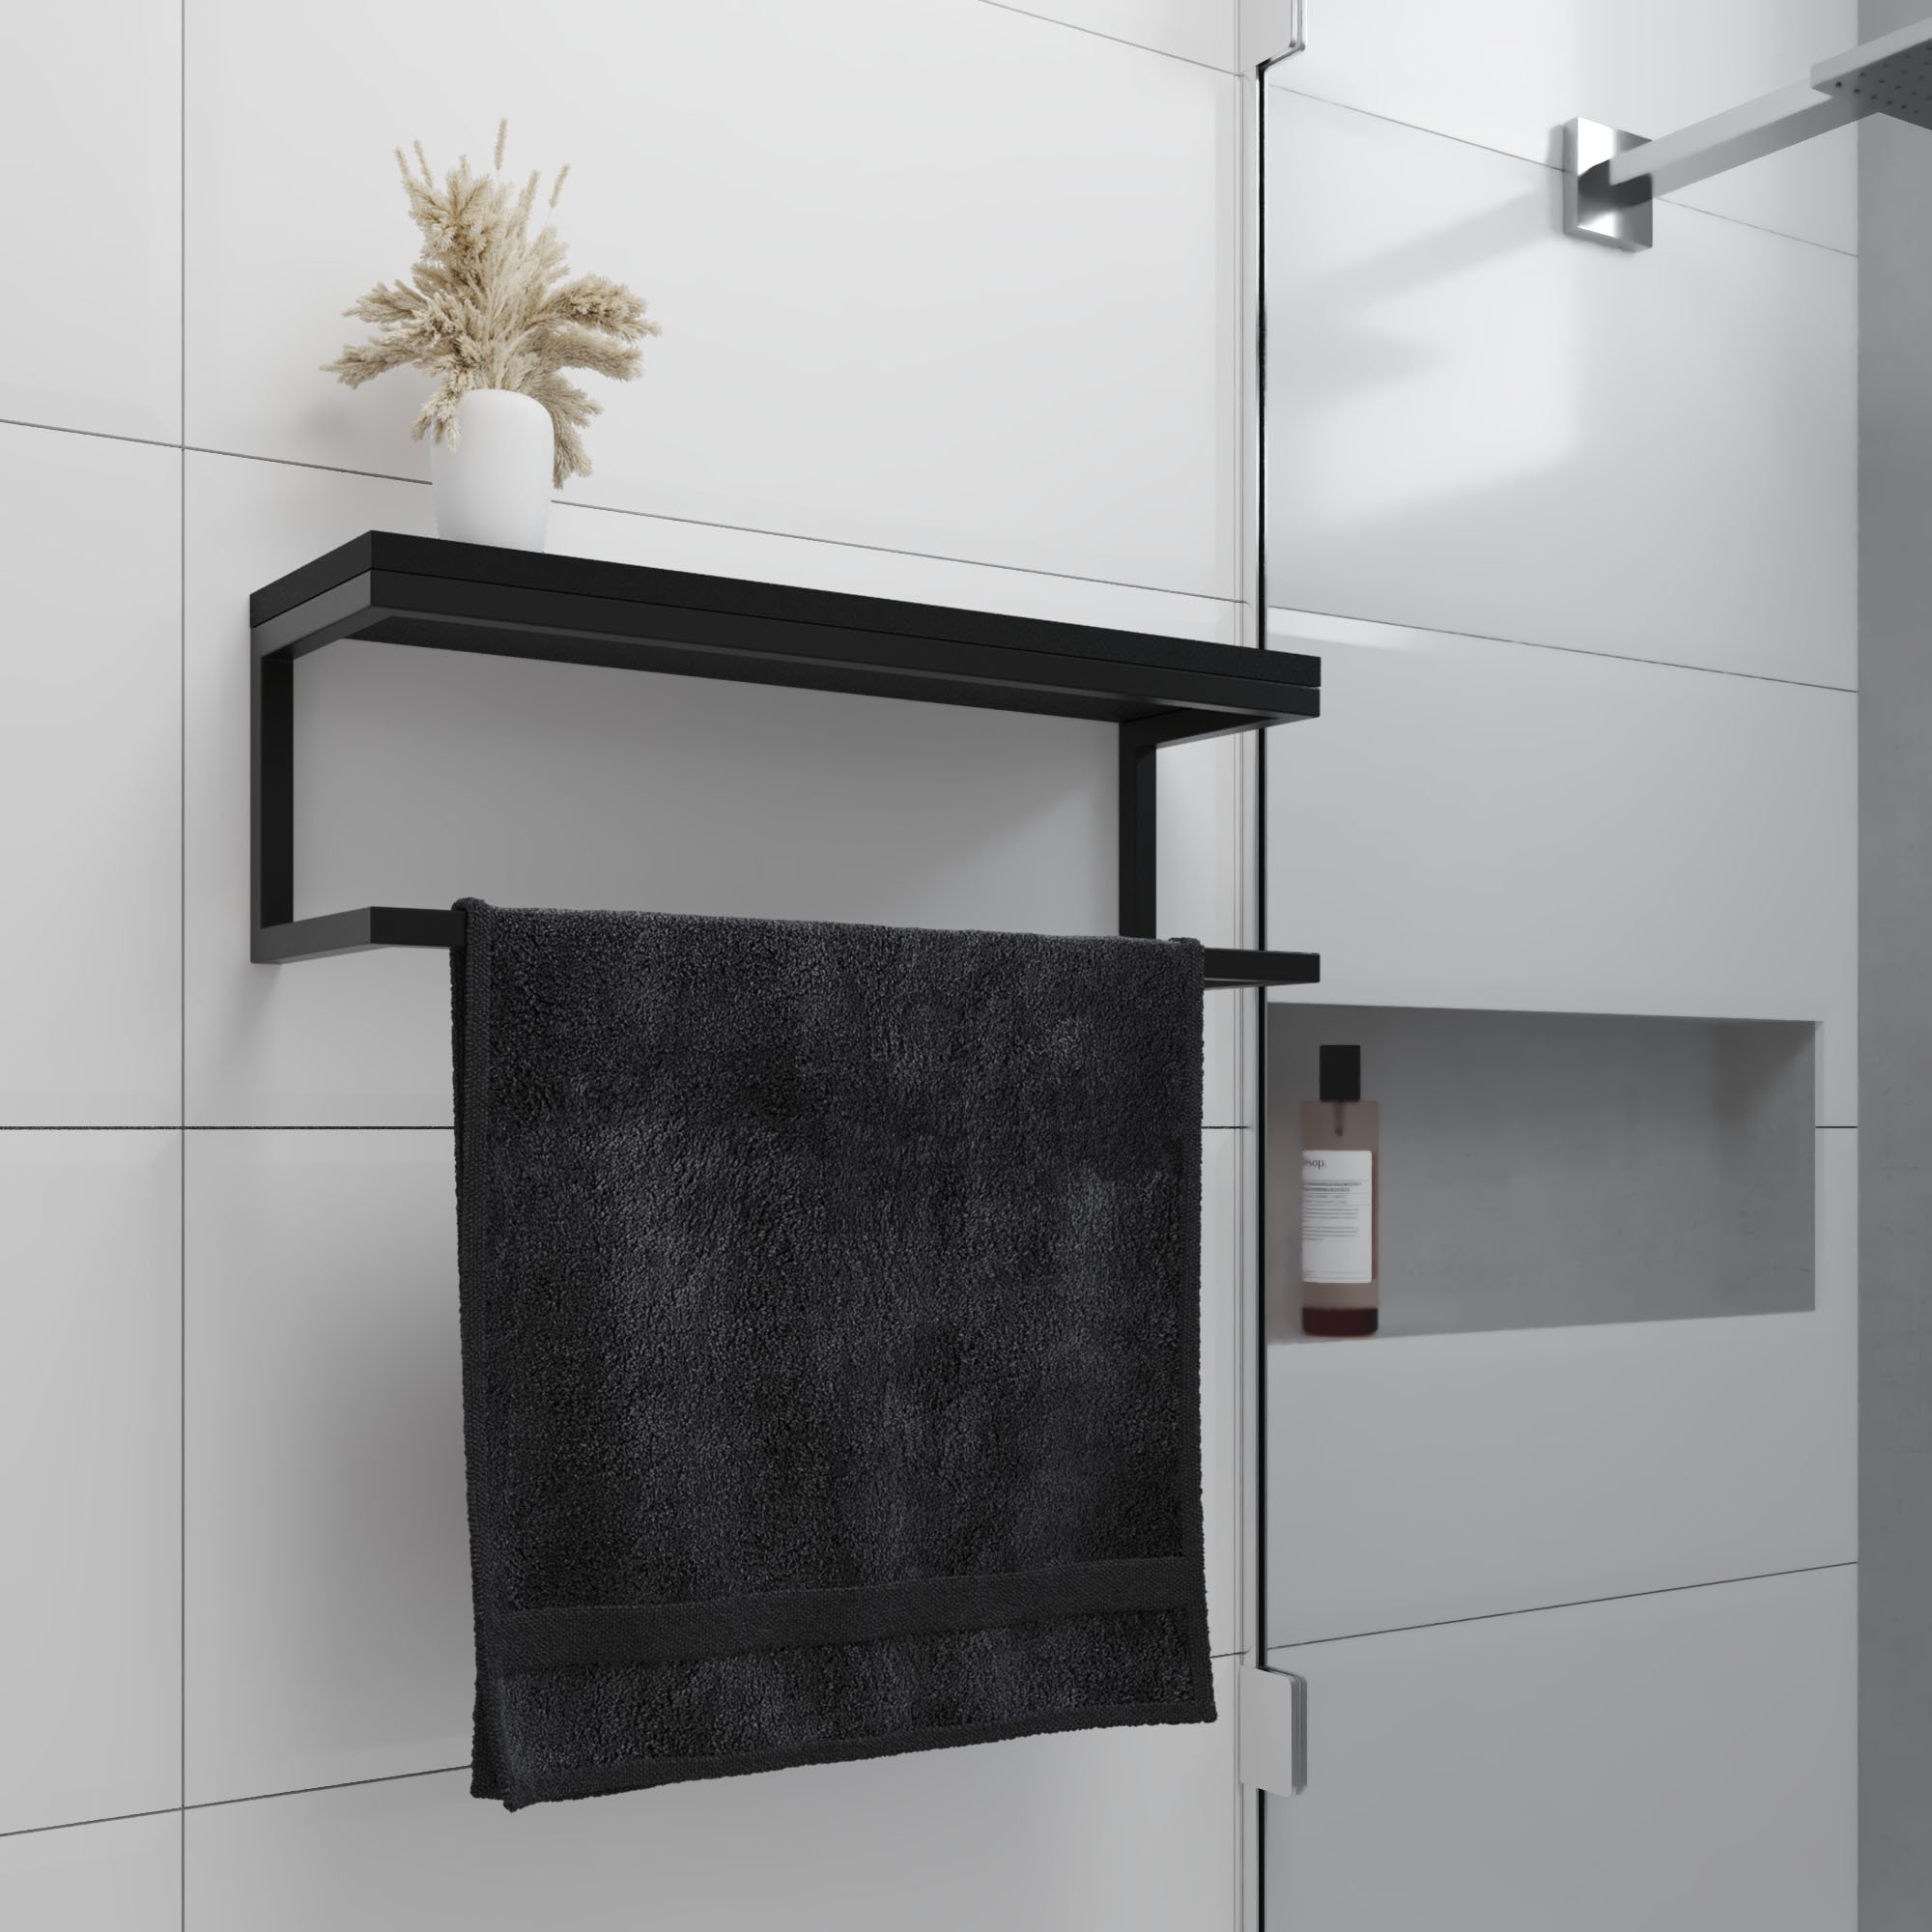 Toalheiro para Banheiro Estilo Industrial Várias Cores New01:Preto com Preto